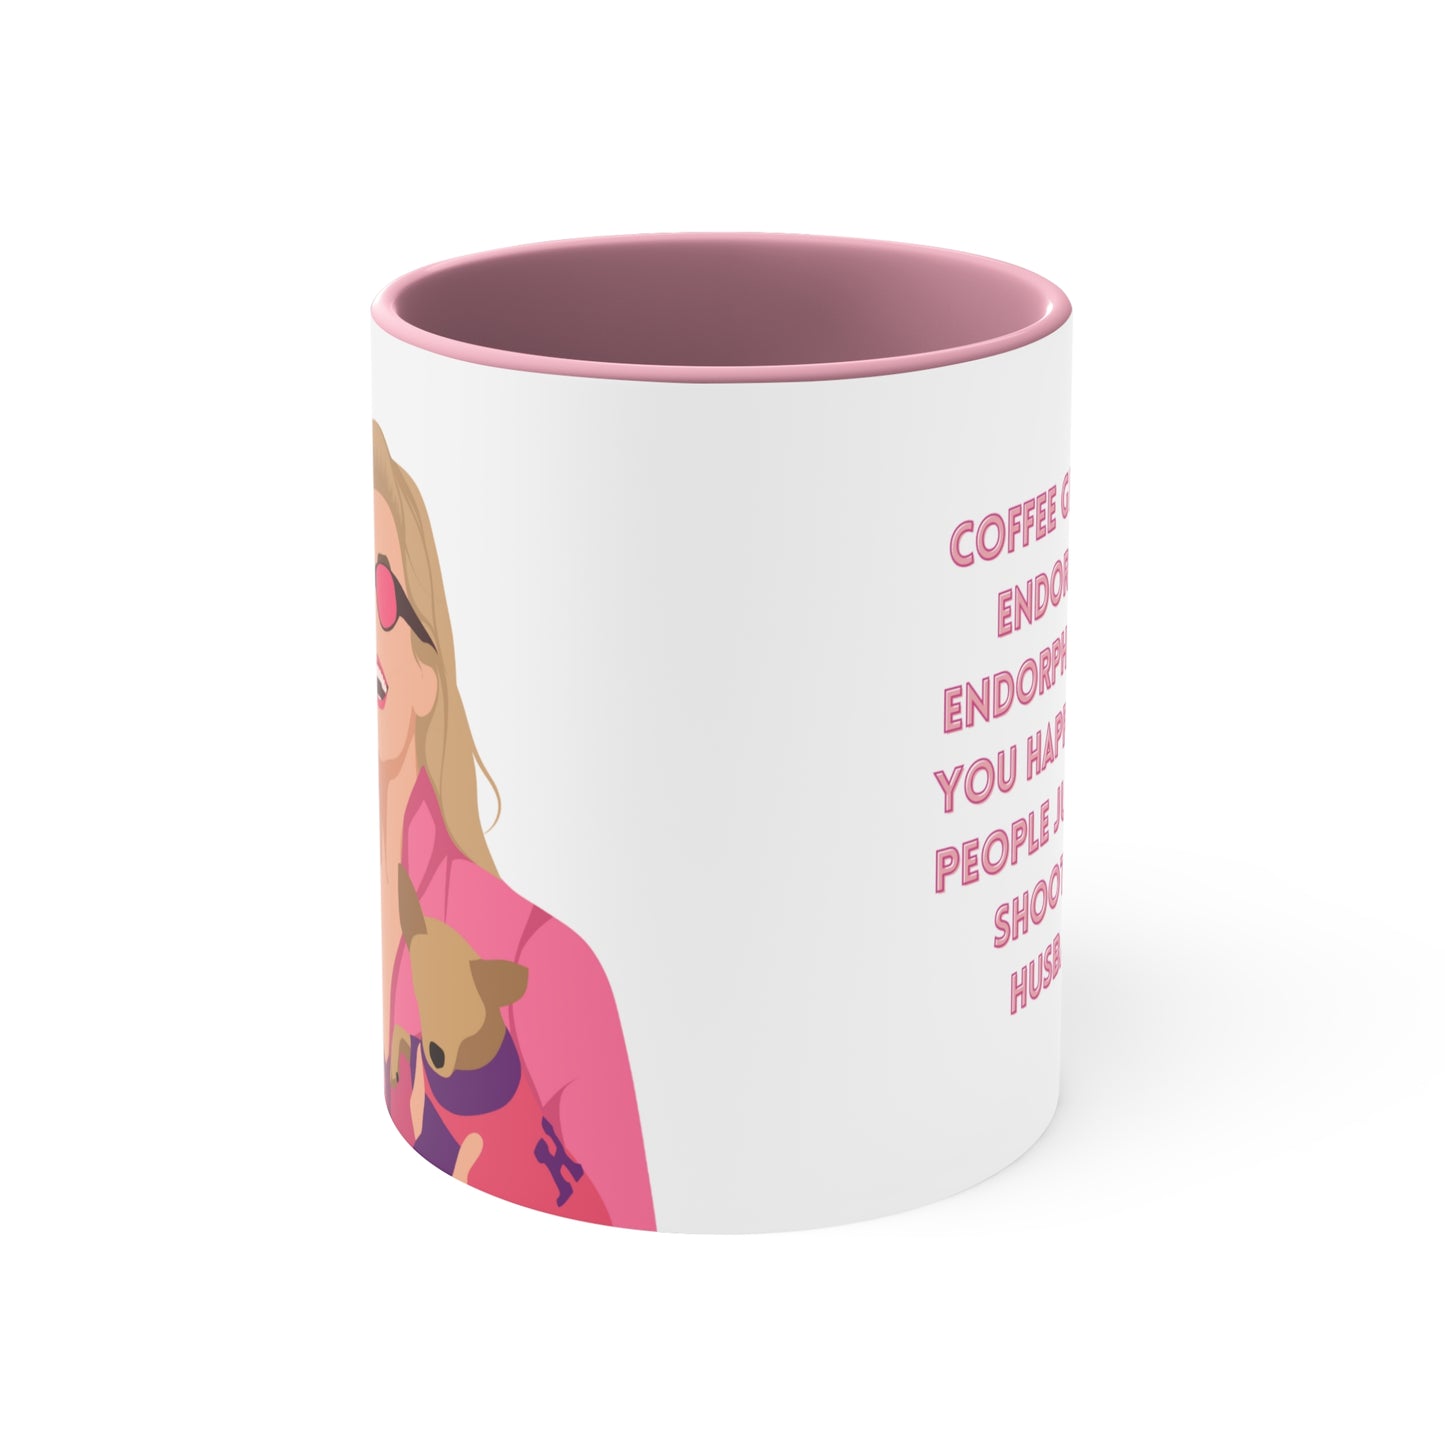 Legally Blonde - Coffee Mug